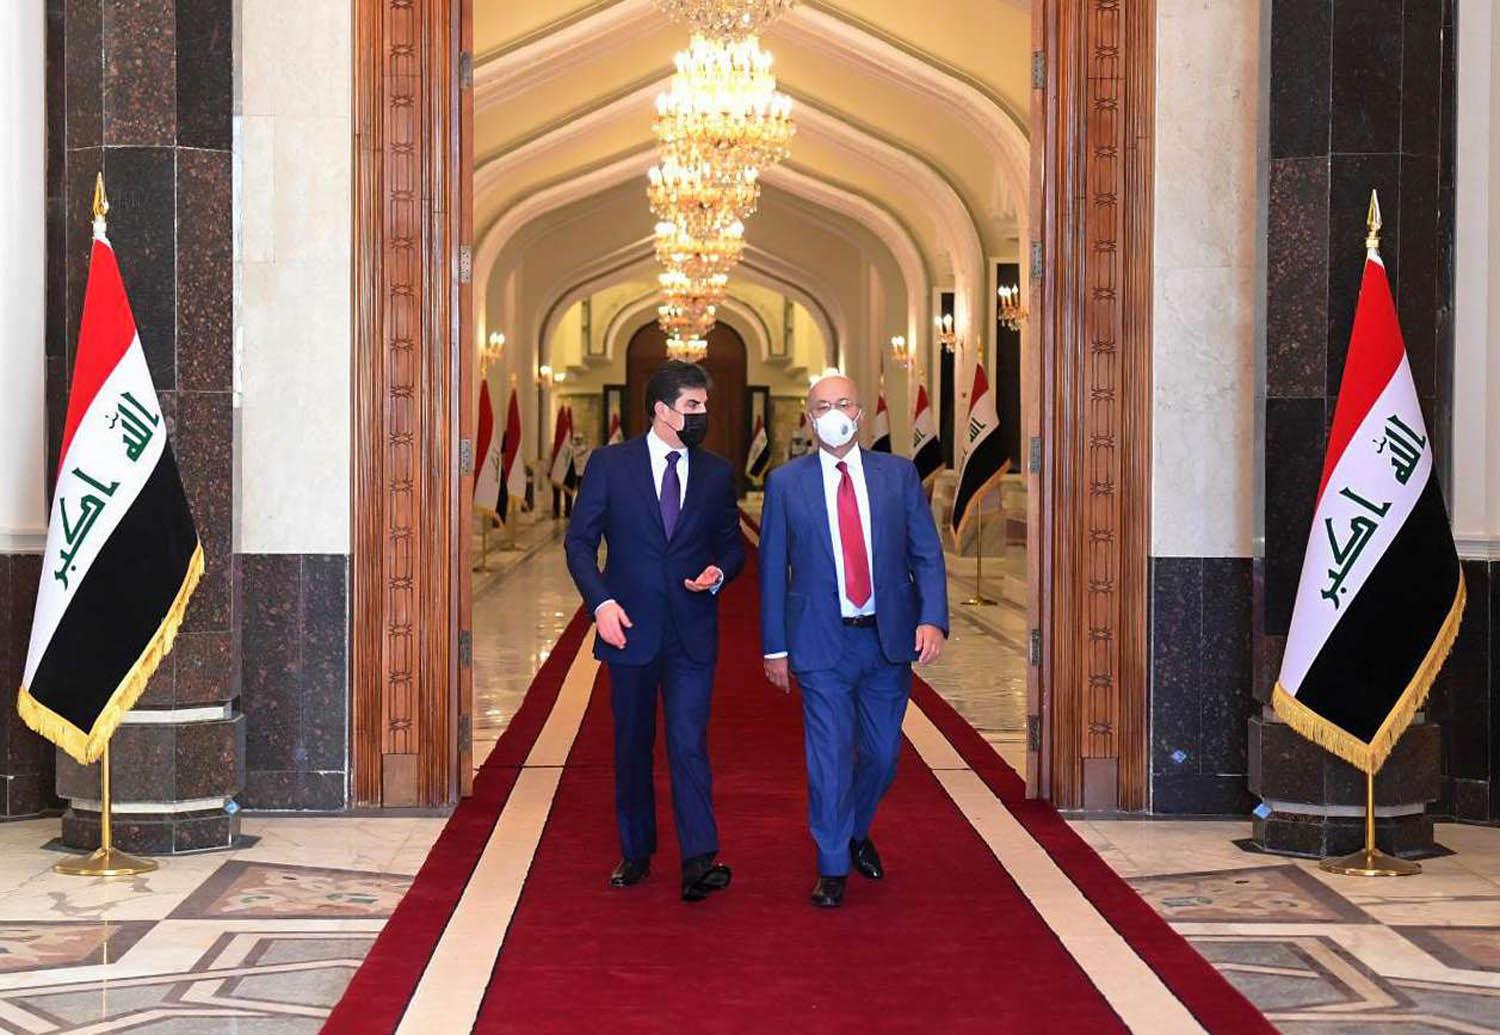 الرئيس العراقي برهم صالح يستقبل رئيس اقليم كردستان نيجيرفان بارزاني